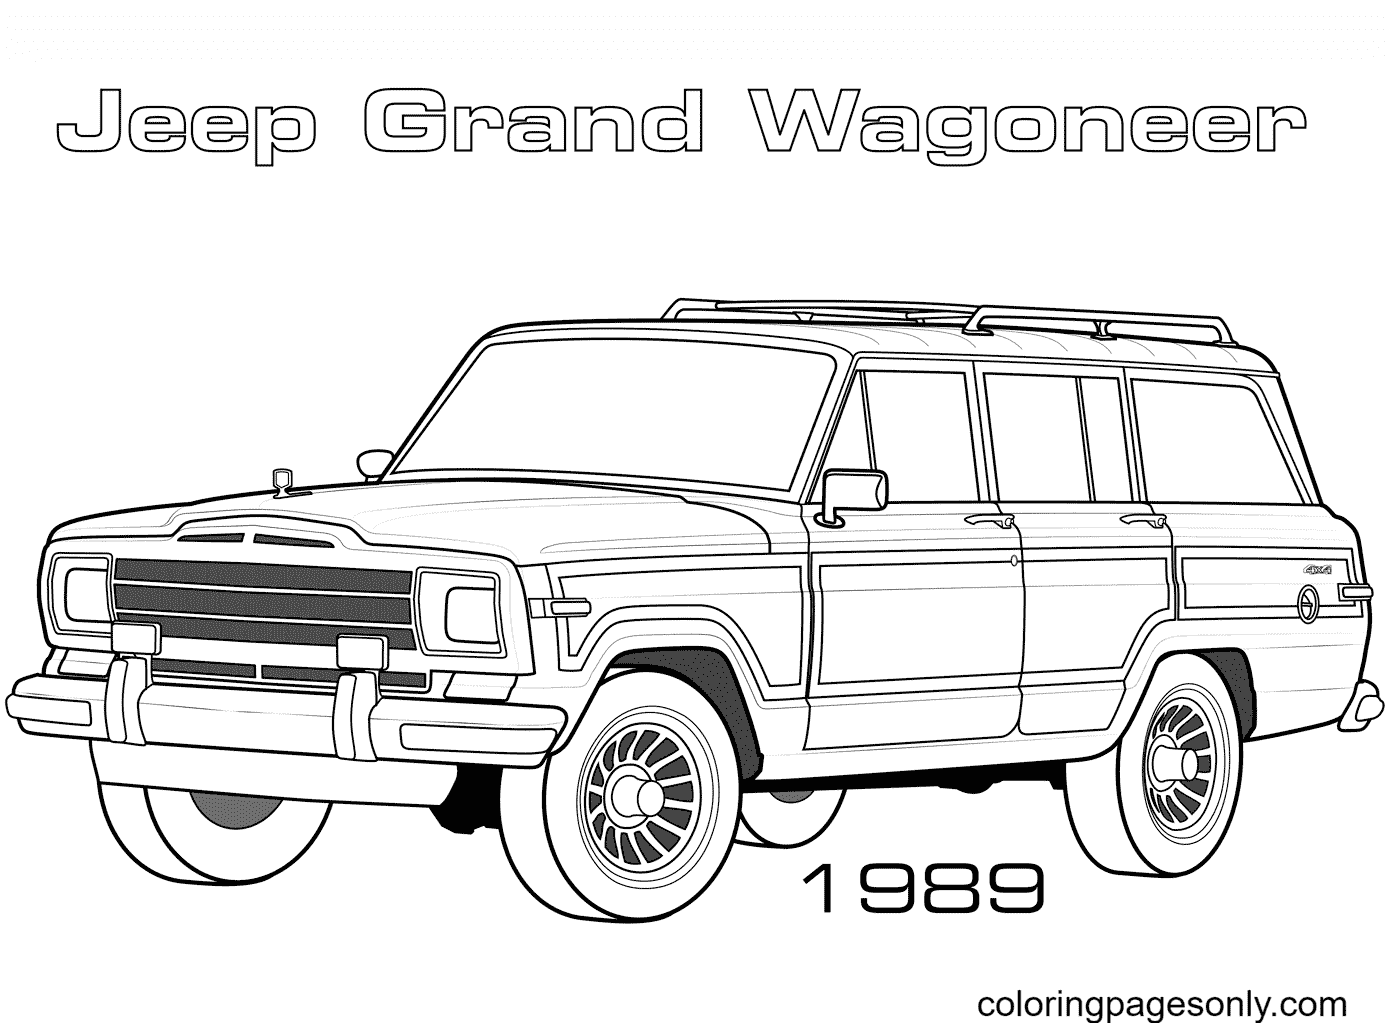 1989 吉普 Grand Wagoneer 来自吉普